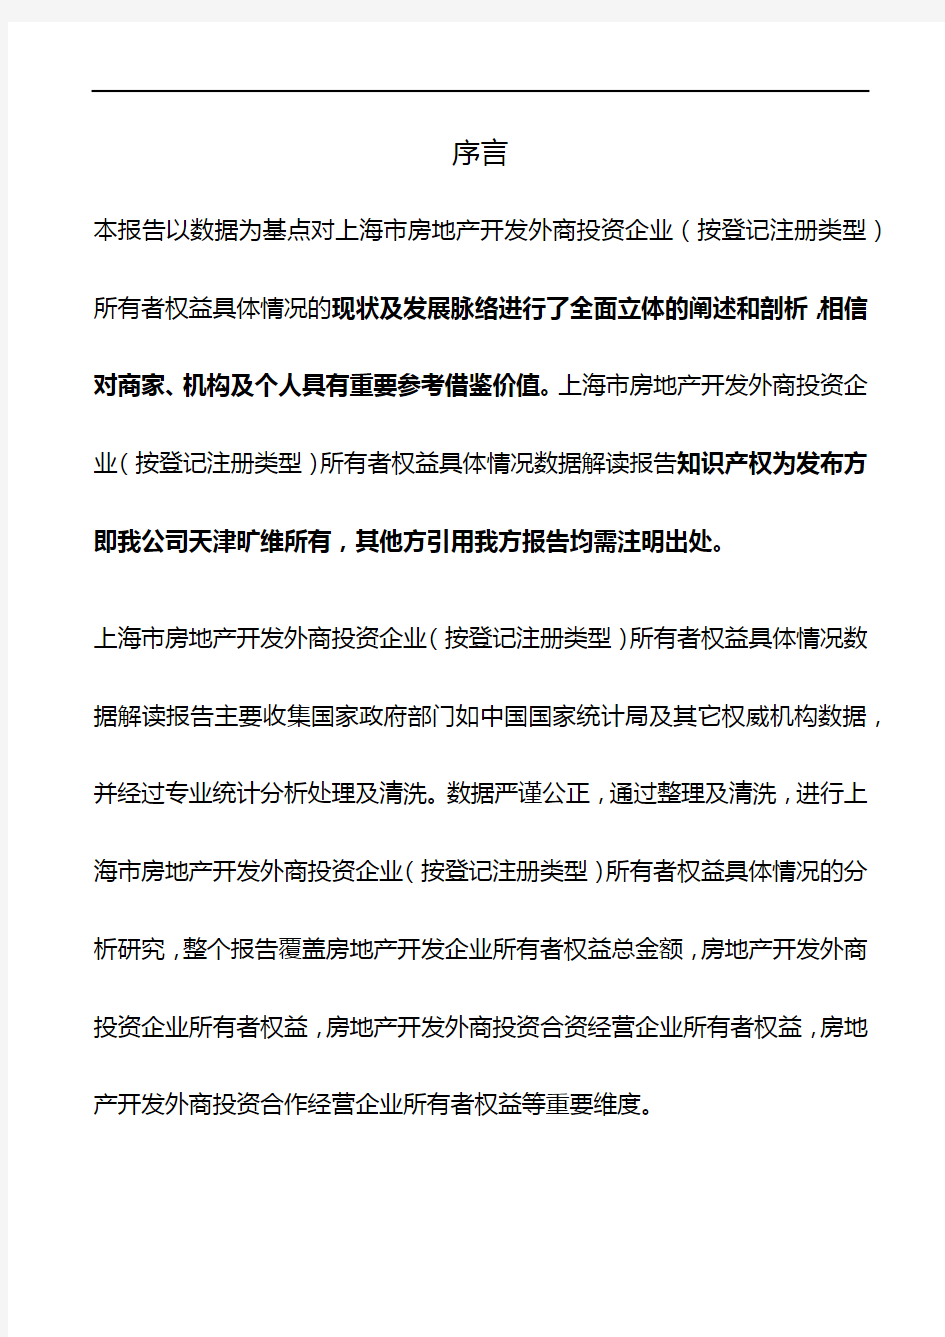 上海市房地产开发外商投资企业(按登记注册类型)所有者权益具体情况3年数据解读报告2019版